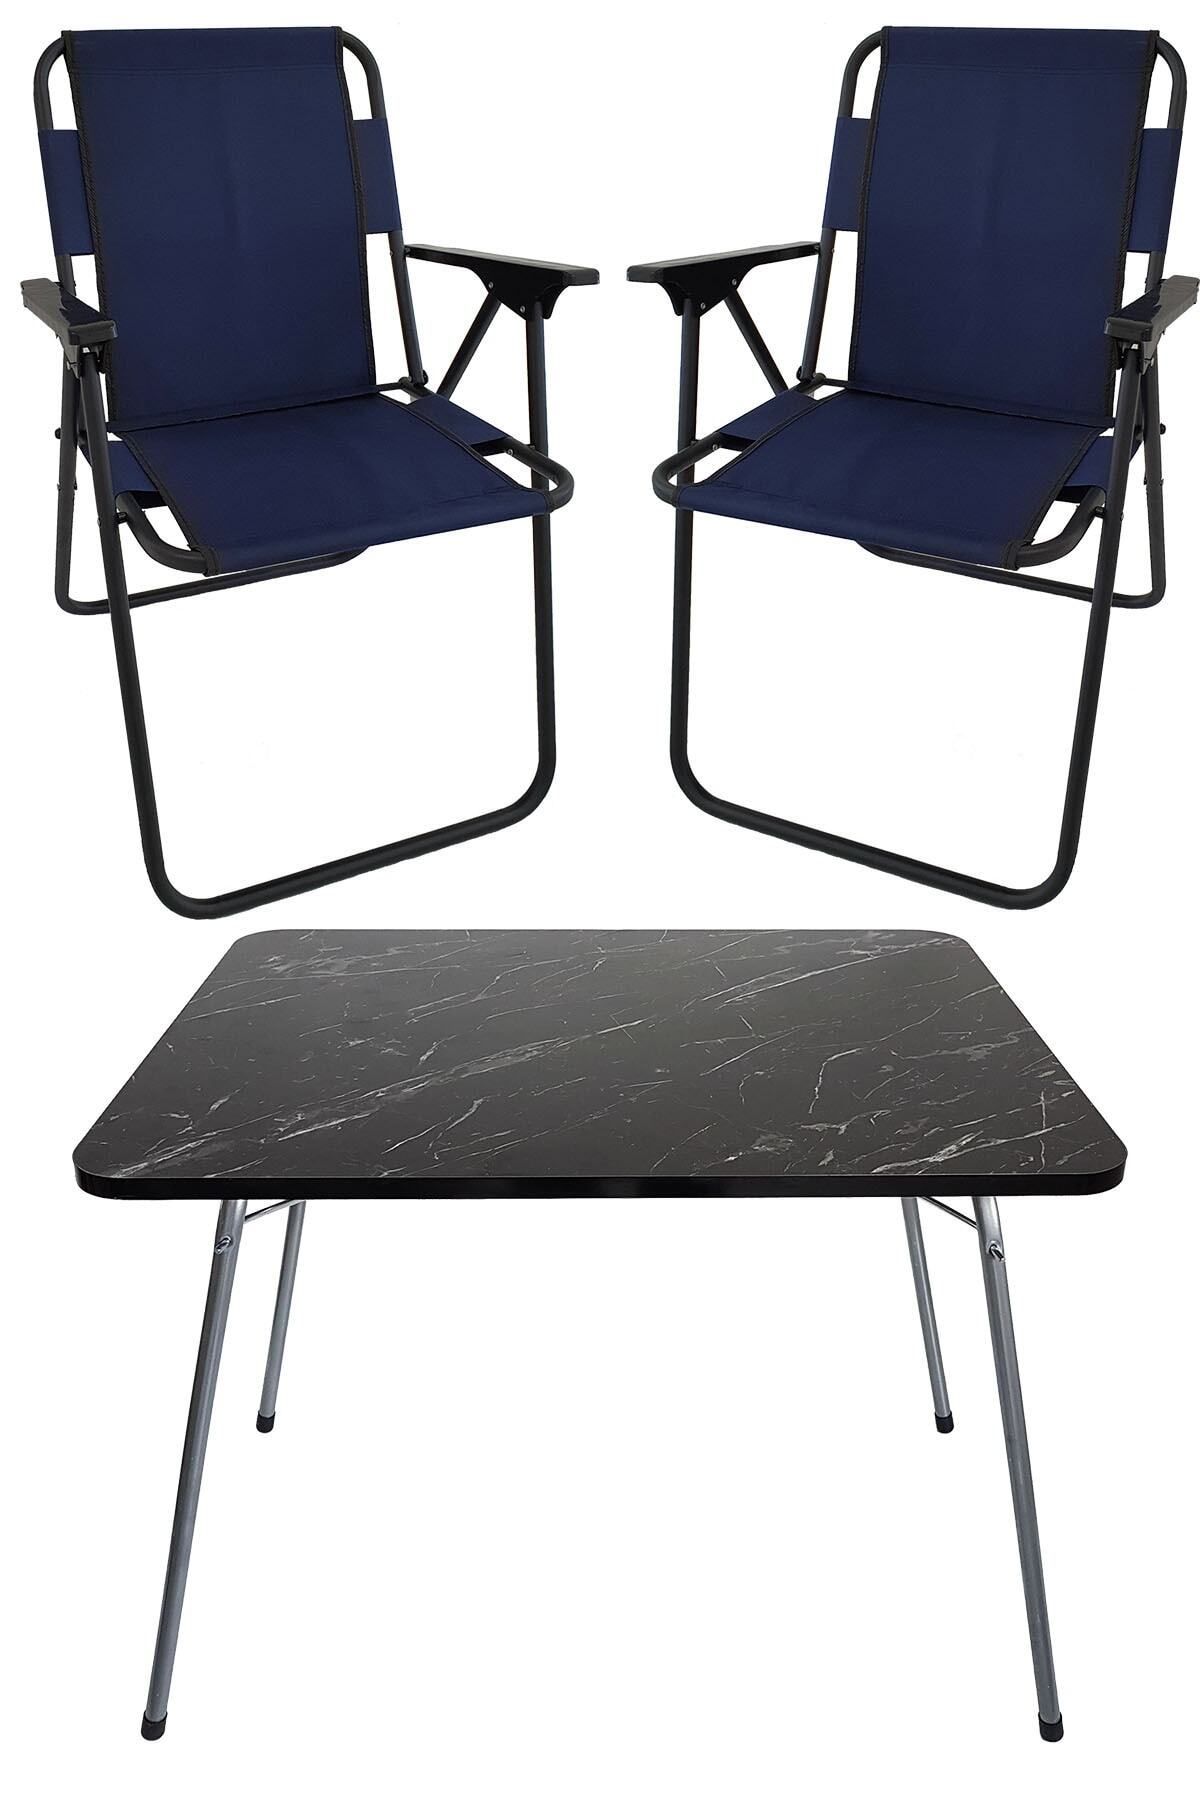 Bofigo 60x80 Granit Desenli Katlanır Masa + 2 Adet Katlanır Sandalye Kamp Seti Bahçe Takımı Lacivert